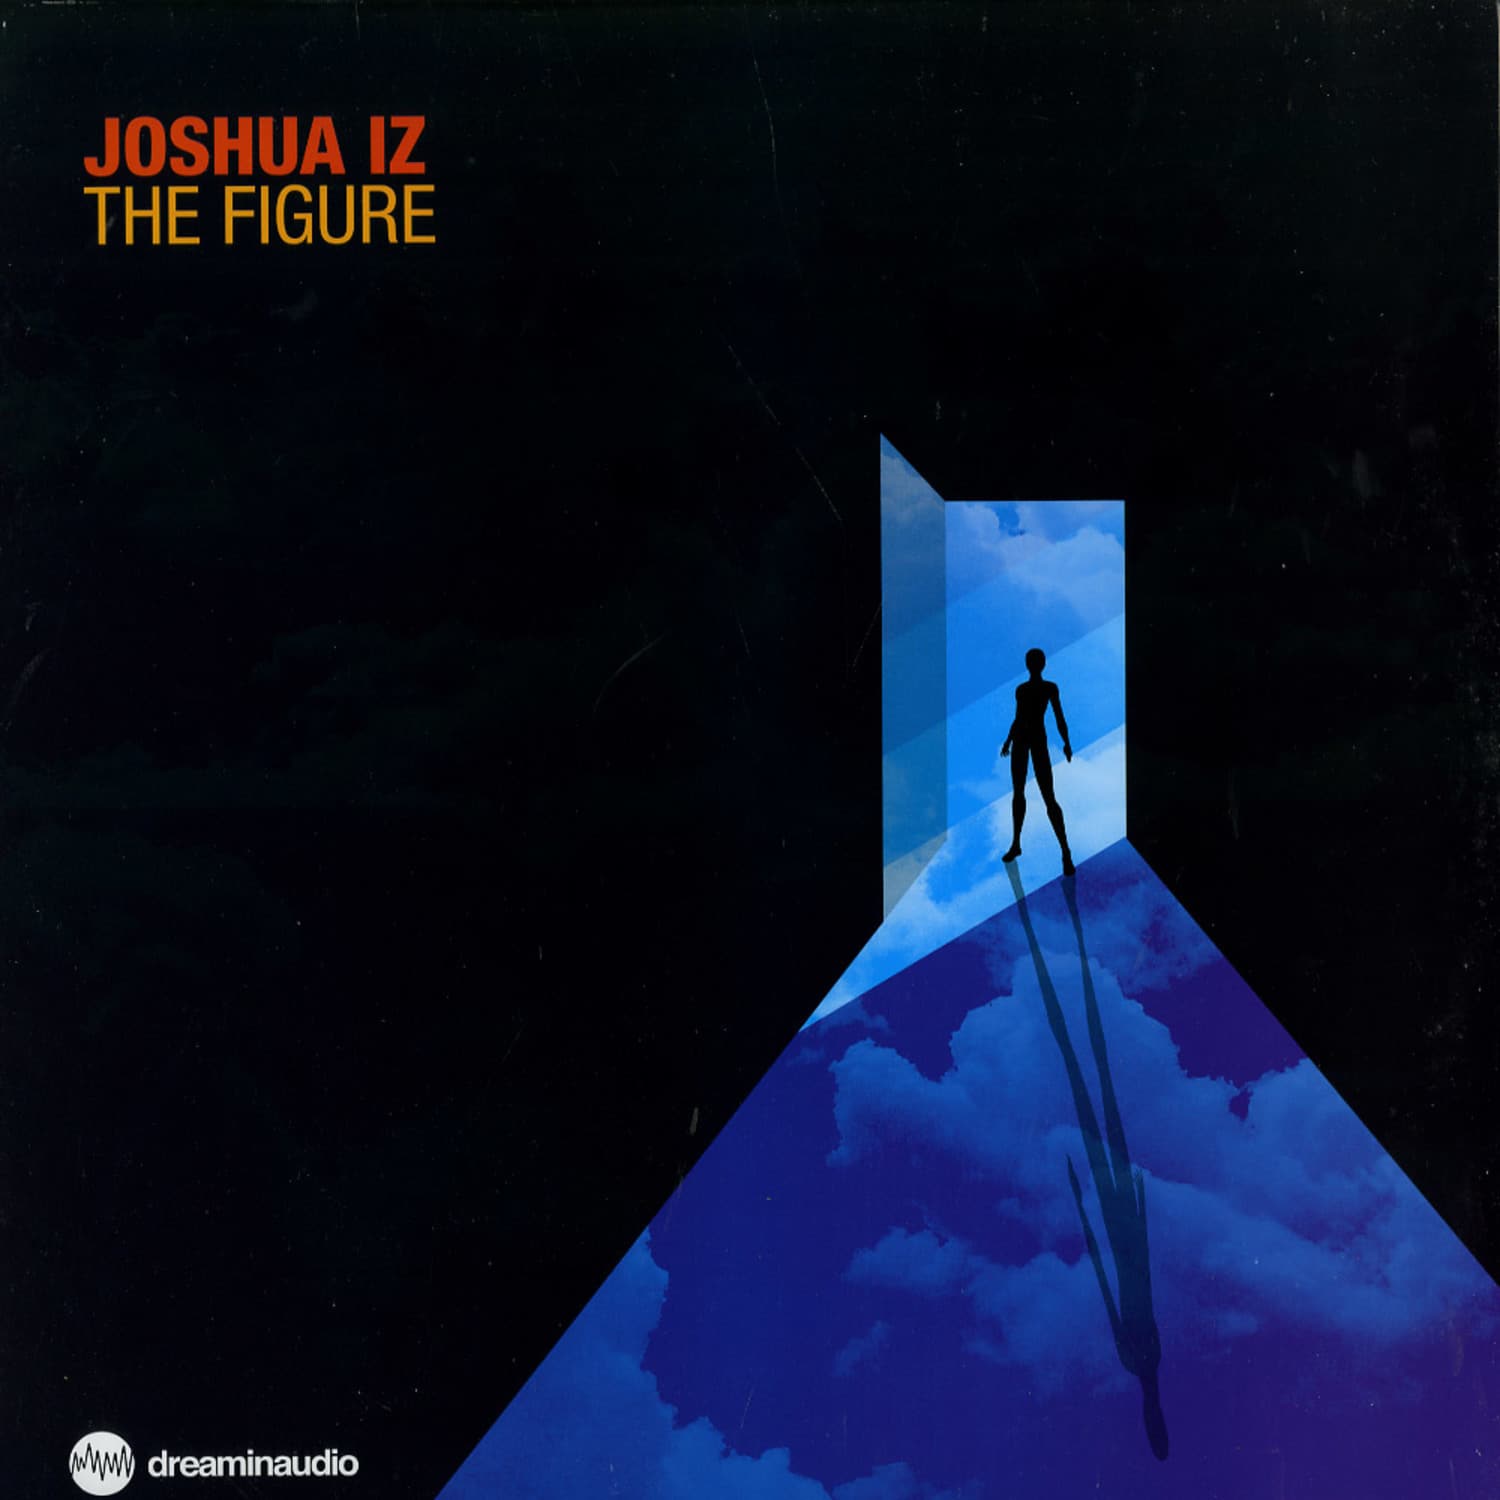 Joshua Iz - THE FIGURE